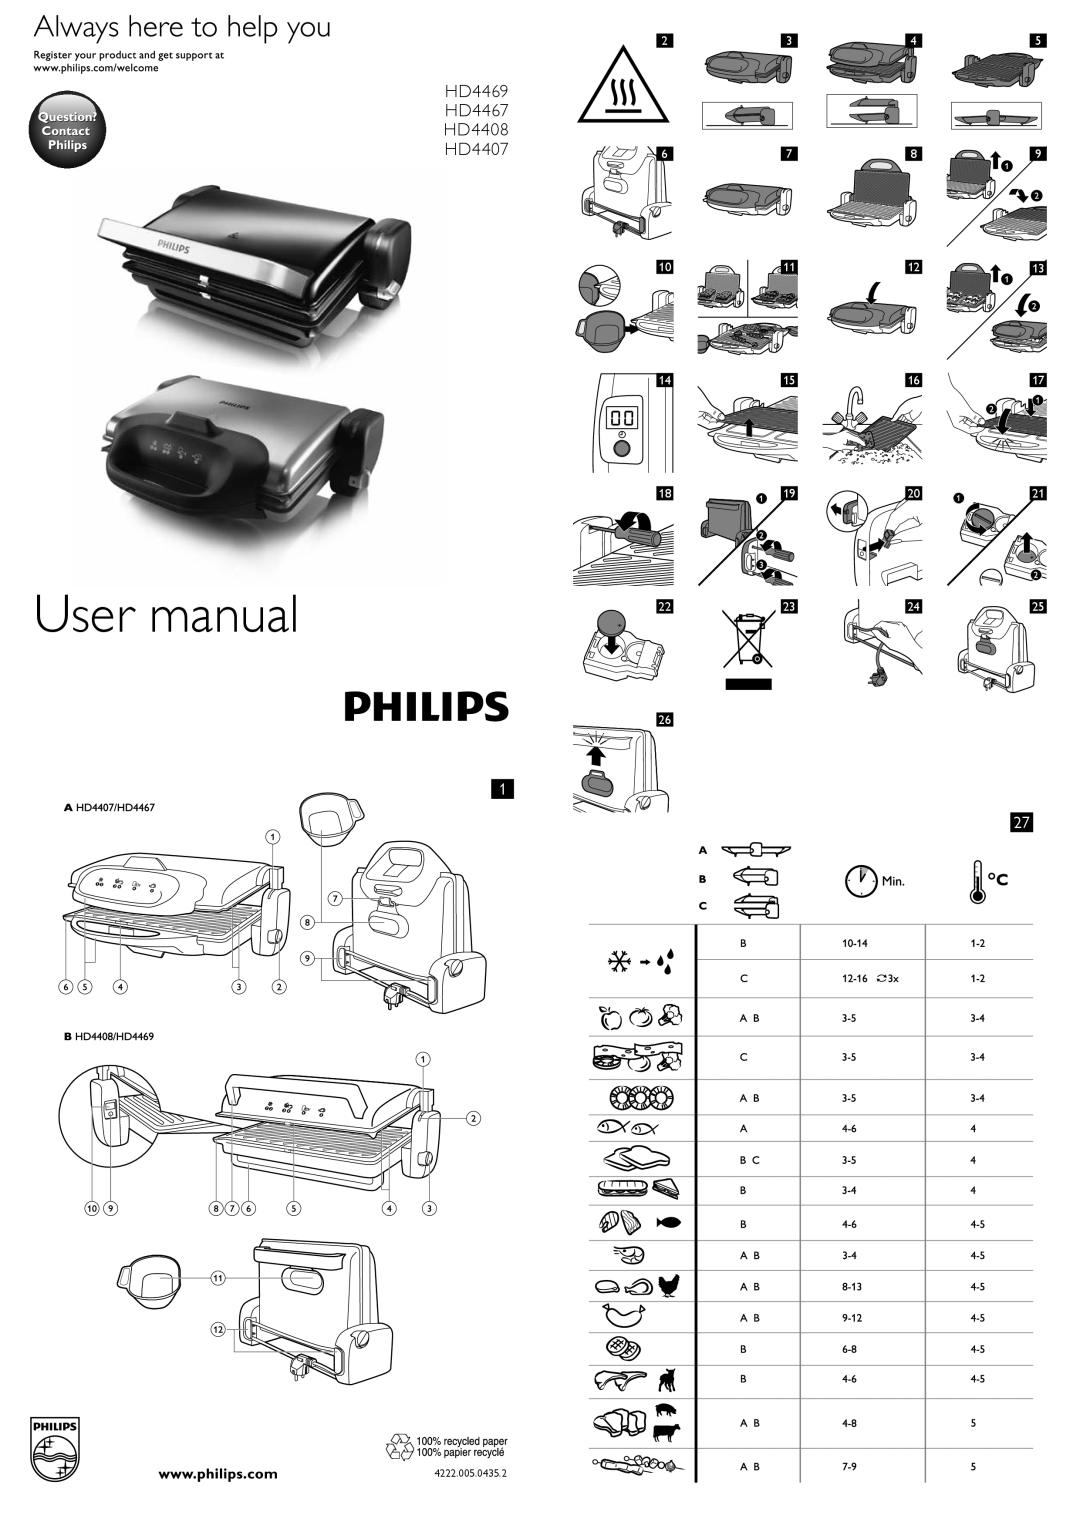 Philips user manual User manual, HD4469 HD4467 HD4408 HD4407, 1819 2223, 1617 2021, 4222.005.0435.2 